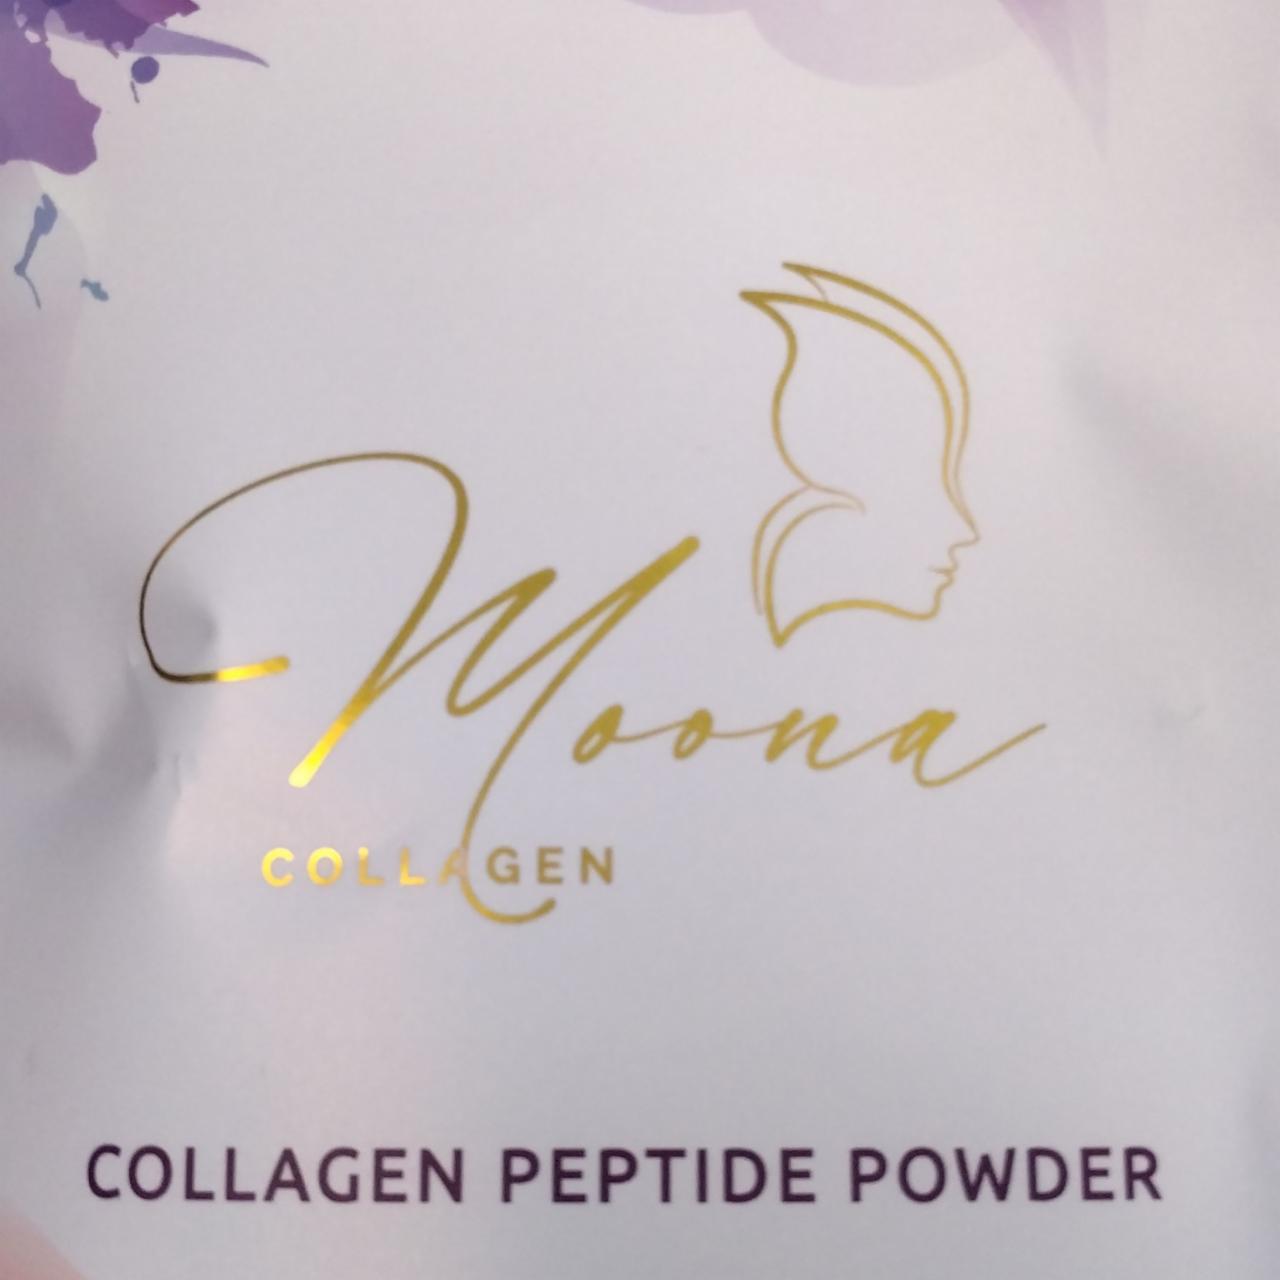 Fotografie - Collagen peptide powder Moona collagen